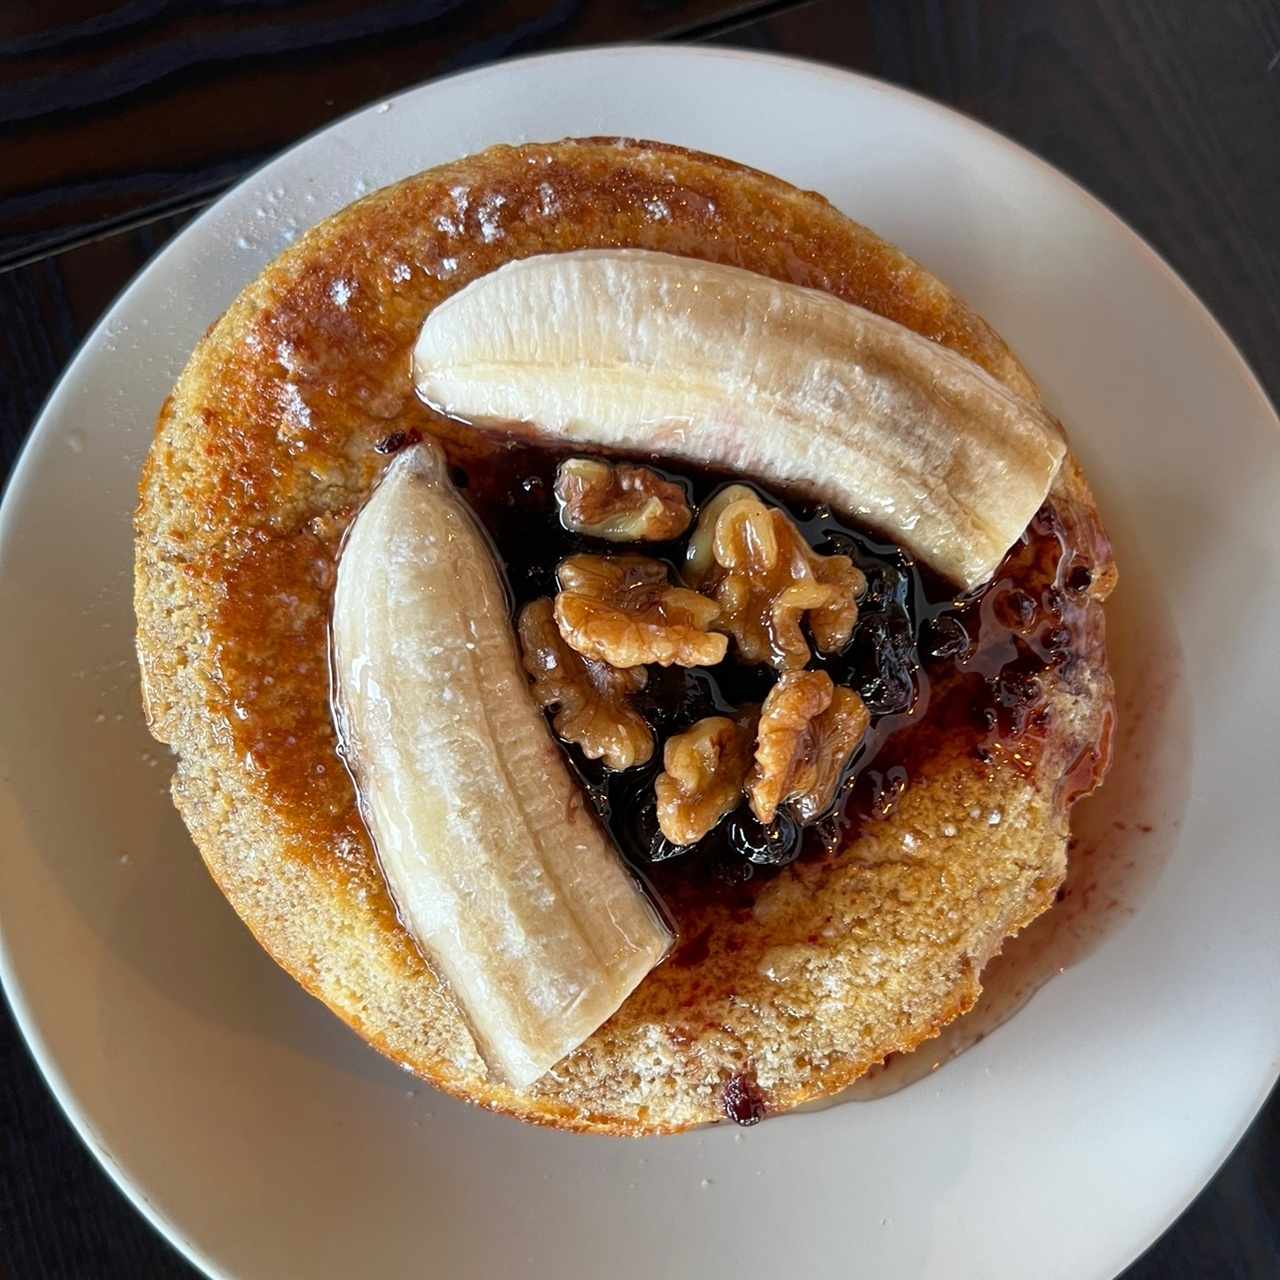 Desayuno - Pancakes de Banana